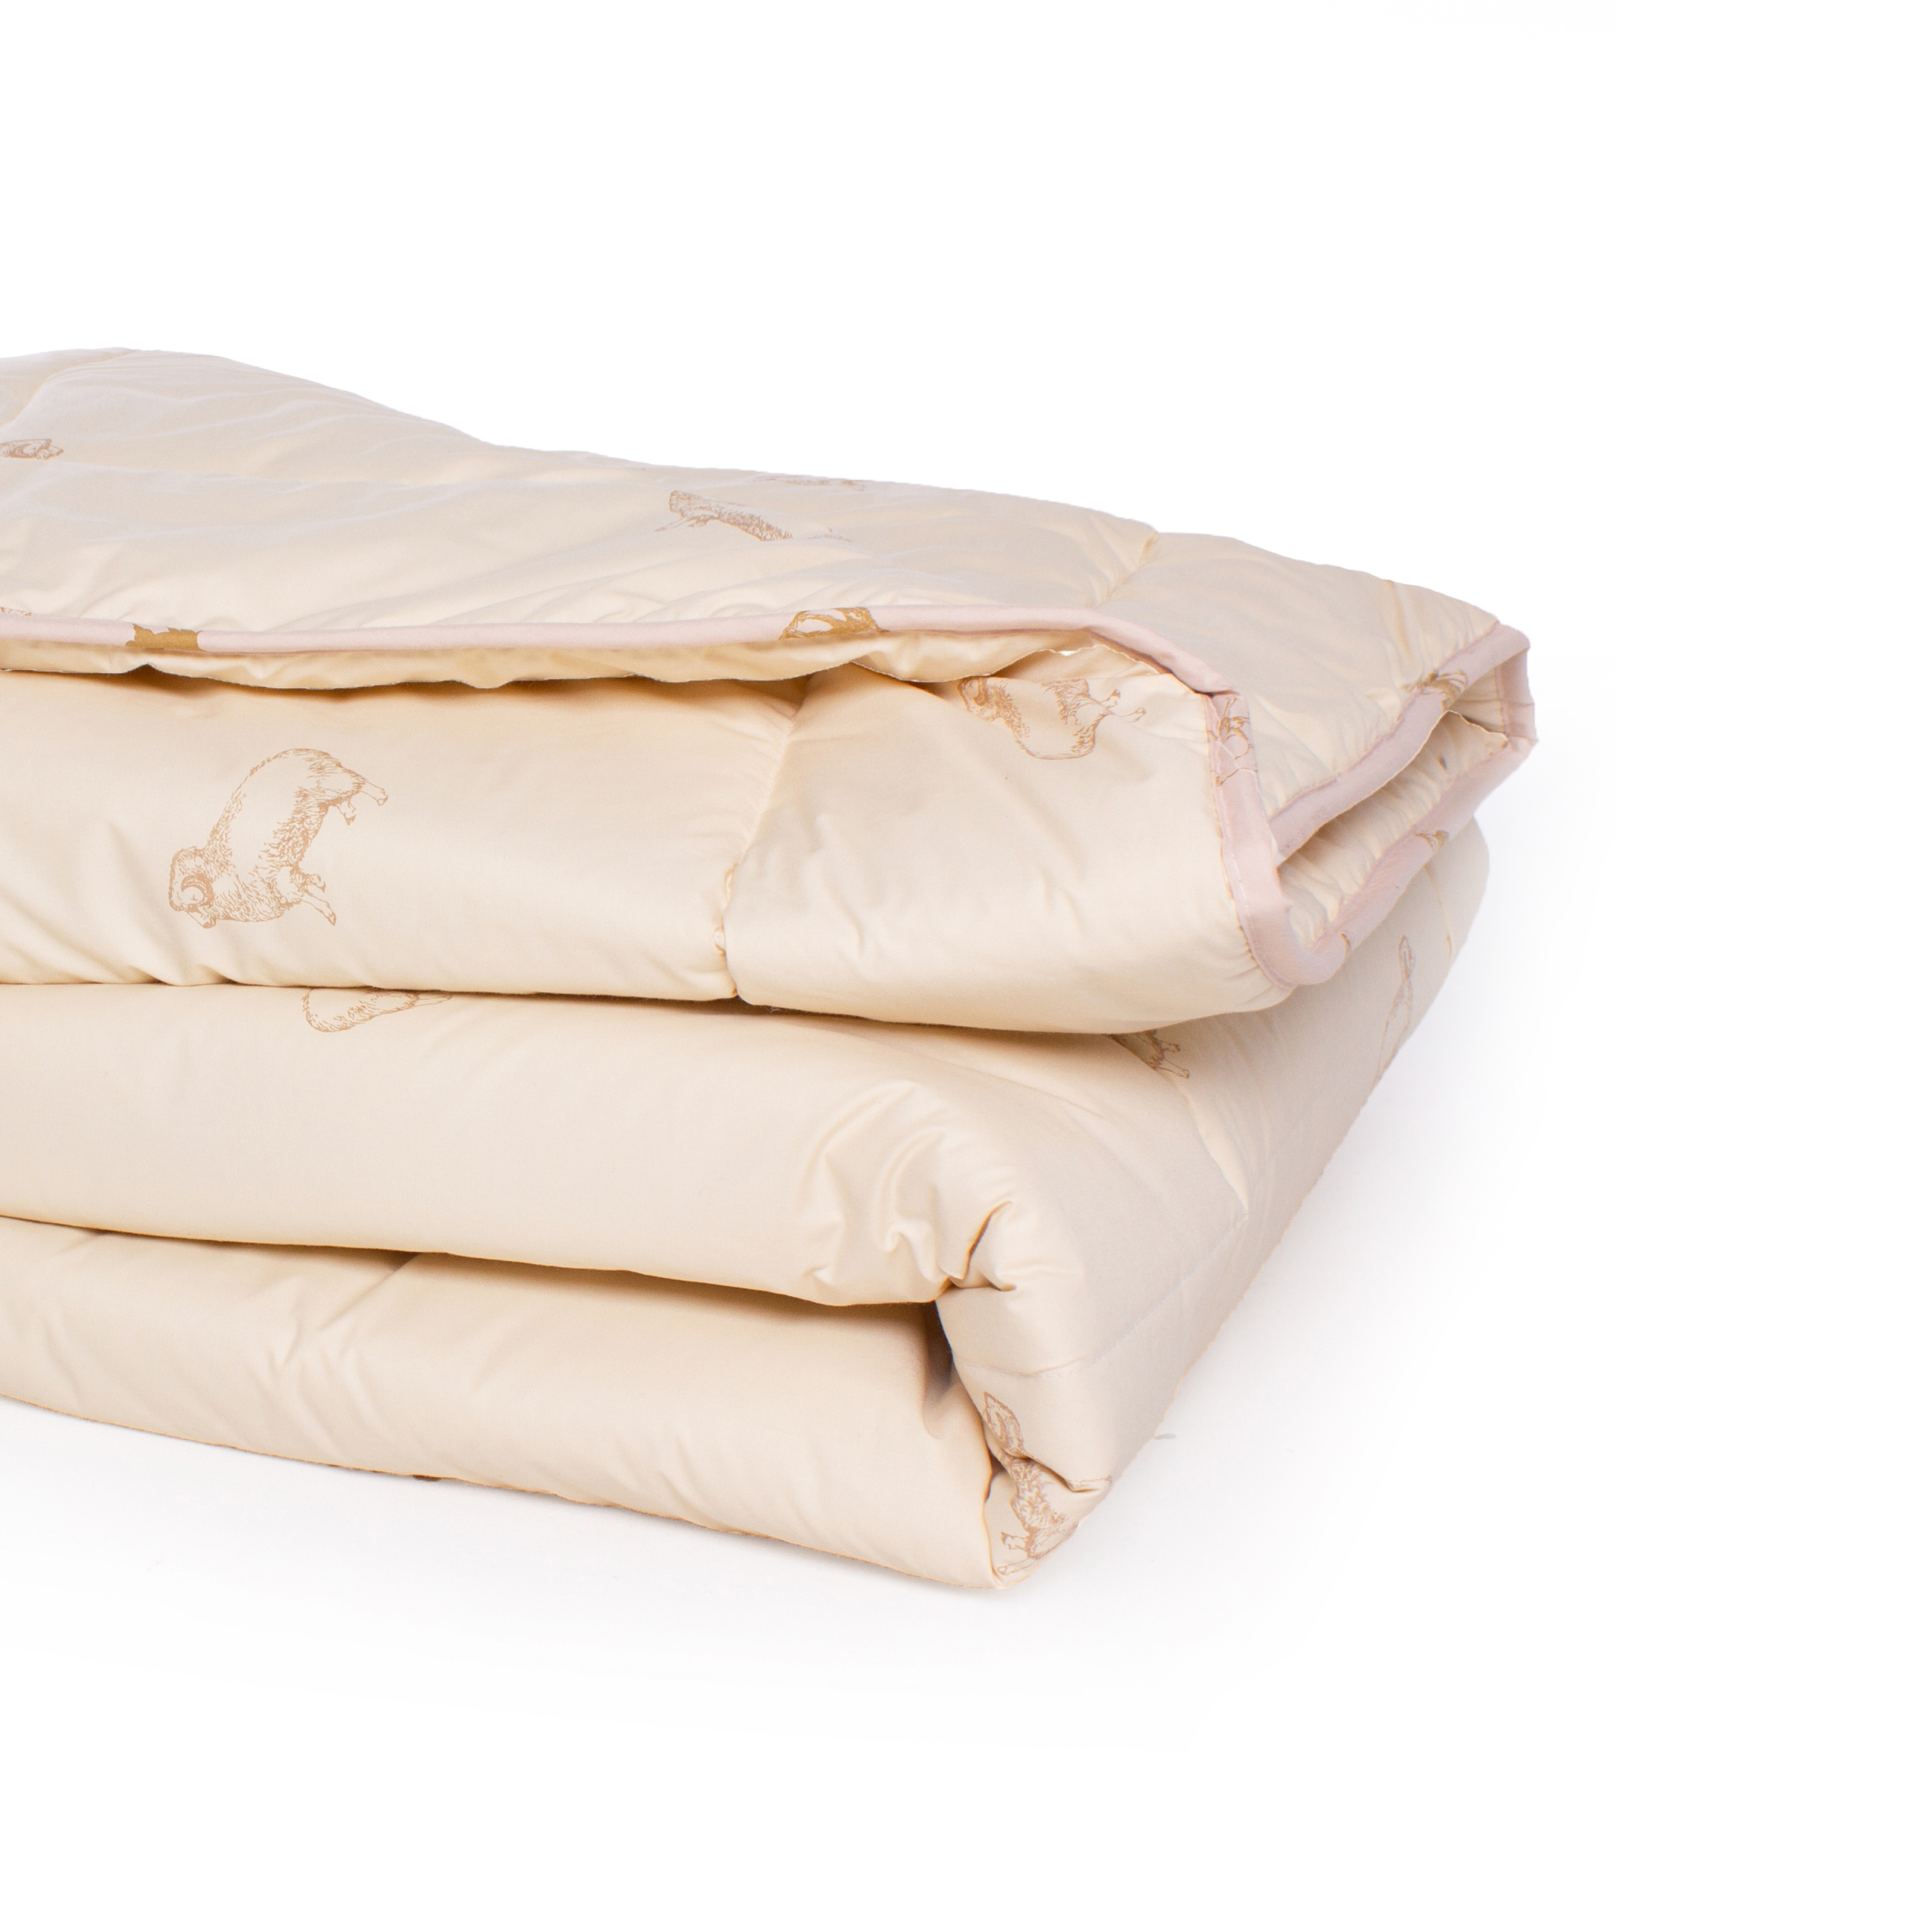 Одеяло шерстяное MirSon Gold Camel №024, зимнее, 155x215 см, кремовое - фото 3